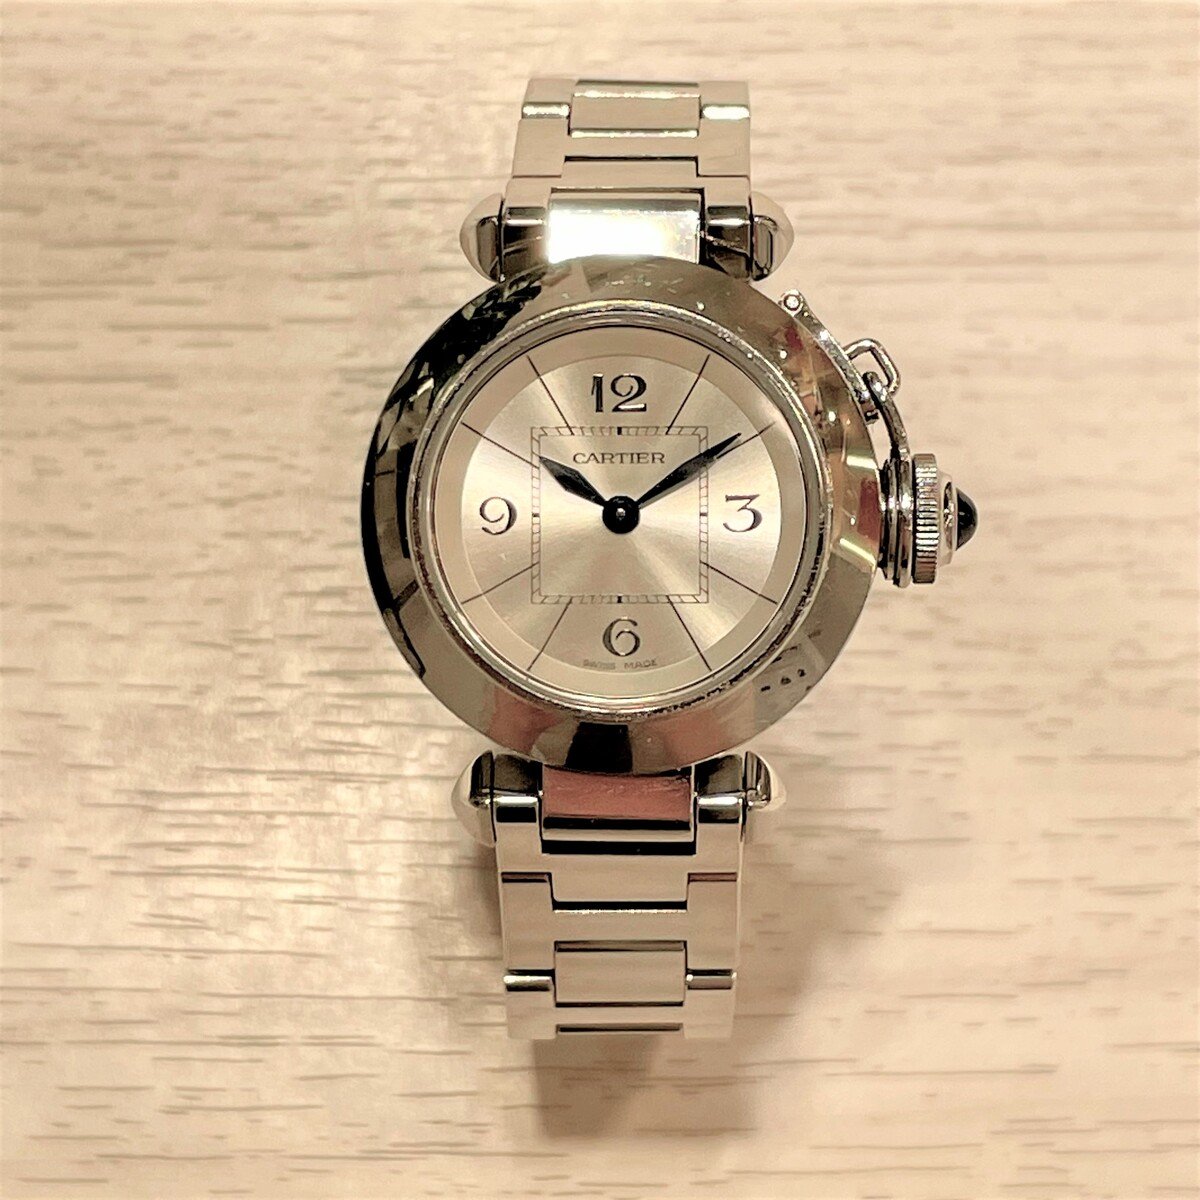 カルティエのステンレススチール ミスパシャ クオーツ腕時計の買取実績です。